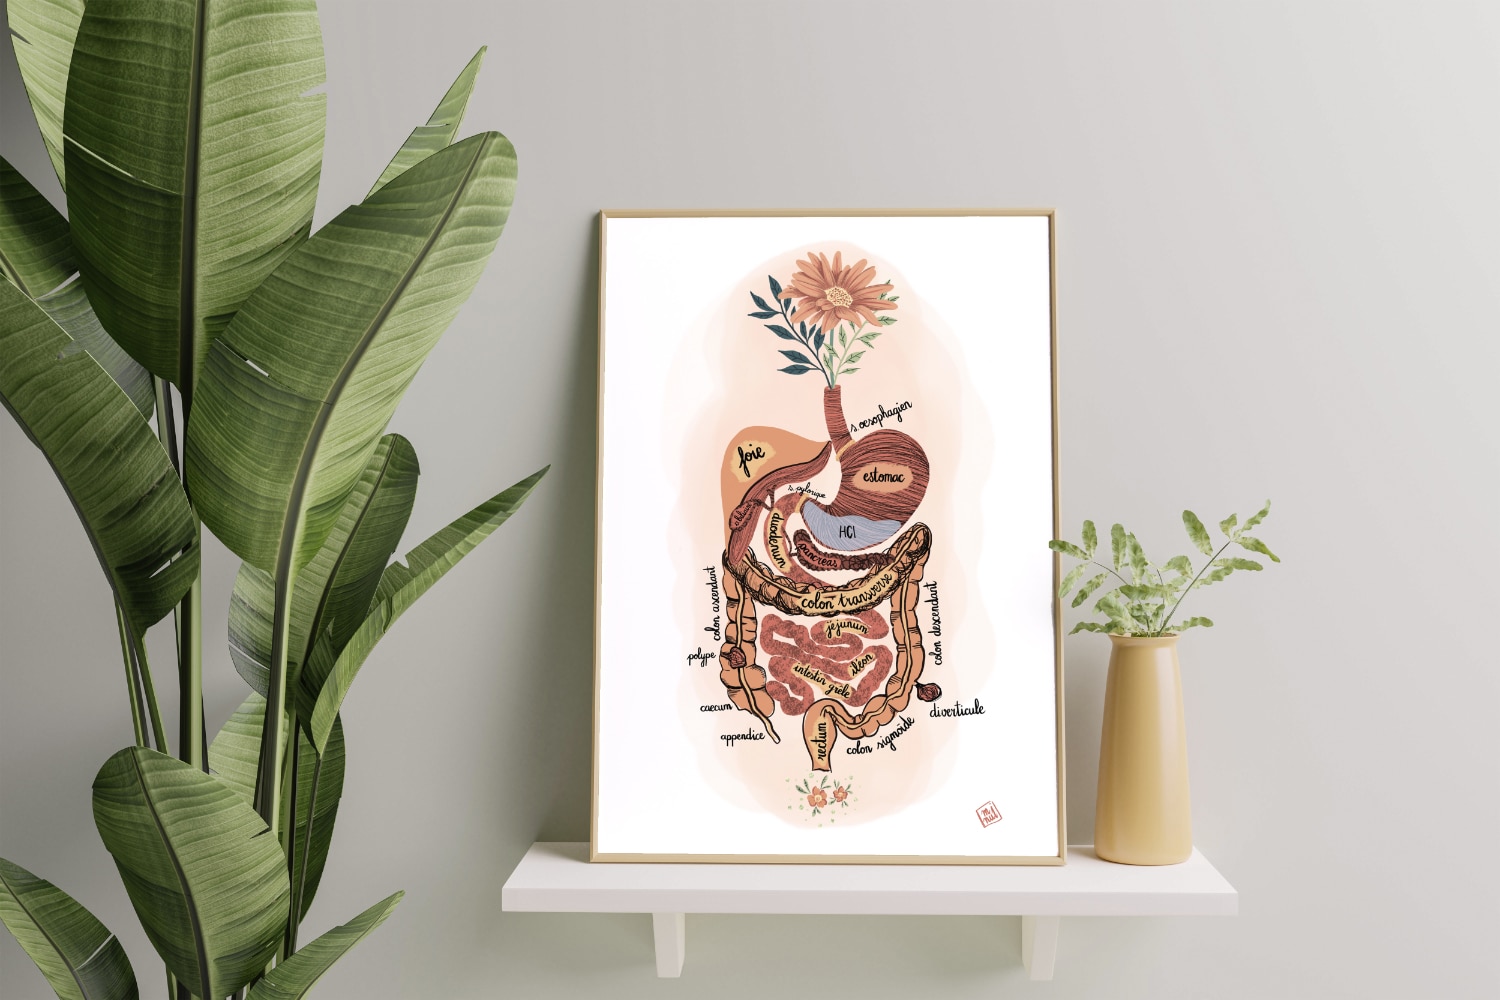 Magalie de Preux - Nutritionniste holistique : Illustration du système digestif humain